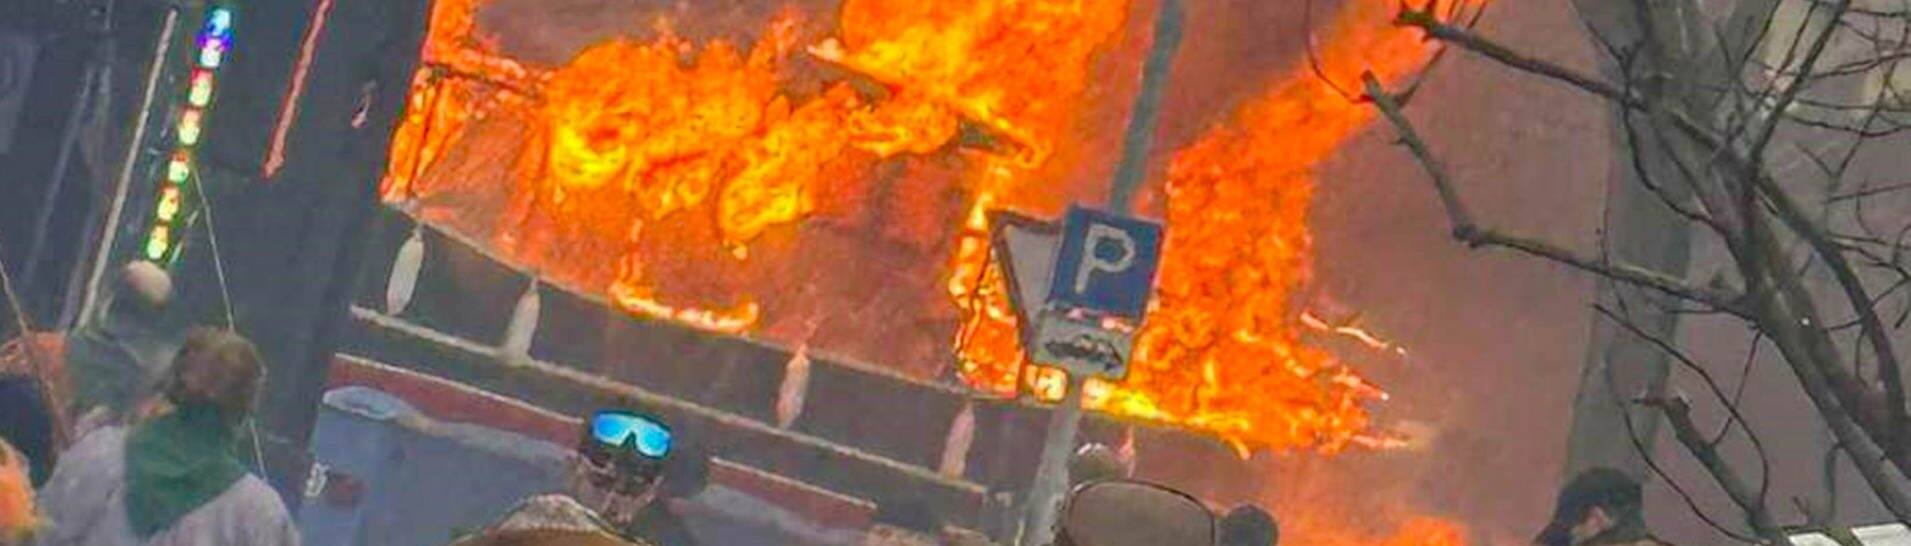 Ein Faschingswagen steht brennend auf einer Straße. Bei einem Faschingsumzug im baden-württembergischen Kehl ist am Sonntag ein Faschingswagen in Brand geraten. (Foto: dpa Bildfunk, picture alliance/dpa/Einsatzreport24 | Marco Dürr)